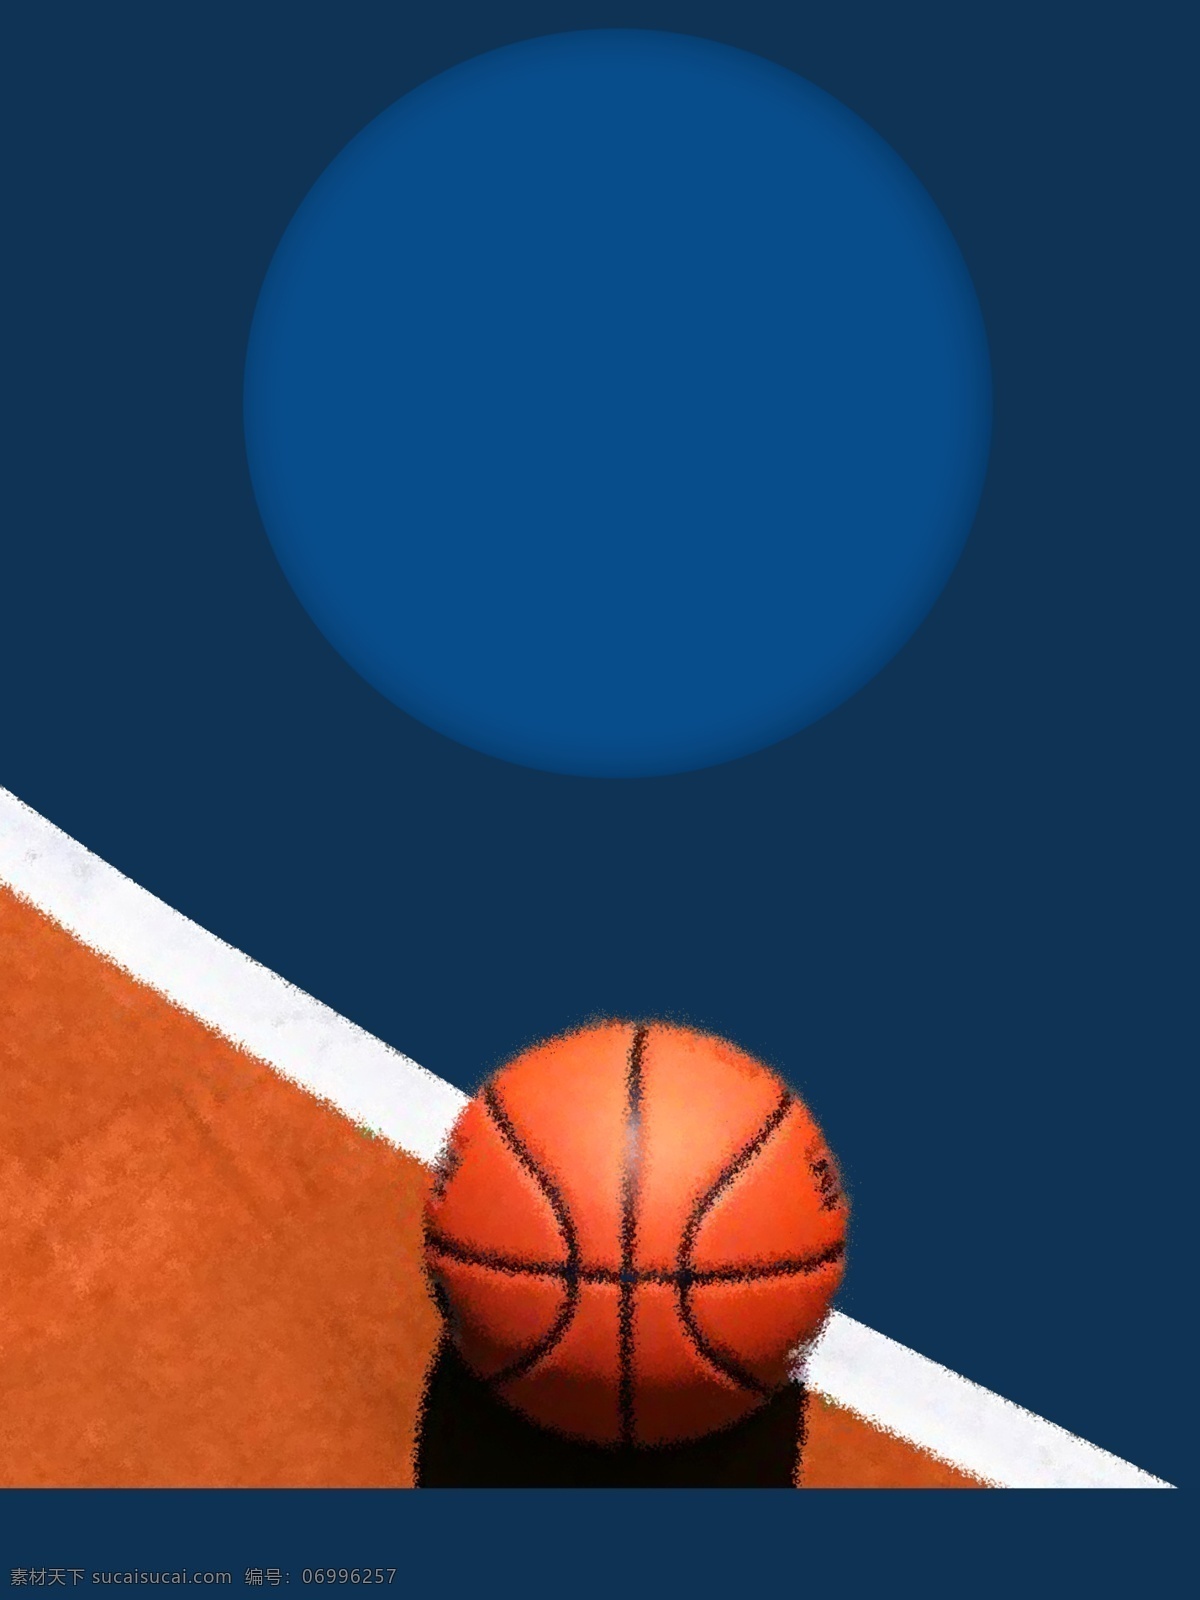 大气 蓝色 篮球 争霸赛 背景 通用背景 篮球背景 竞技 比赛 体育背景 特训营背景